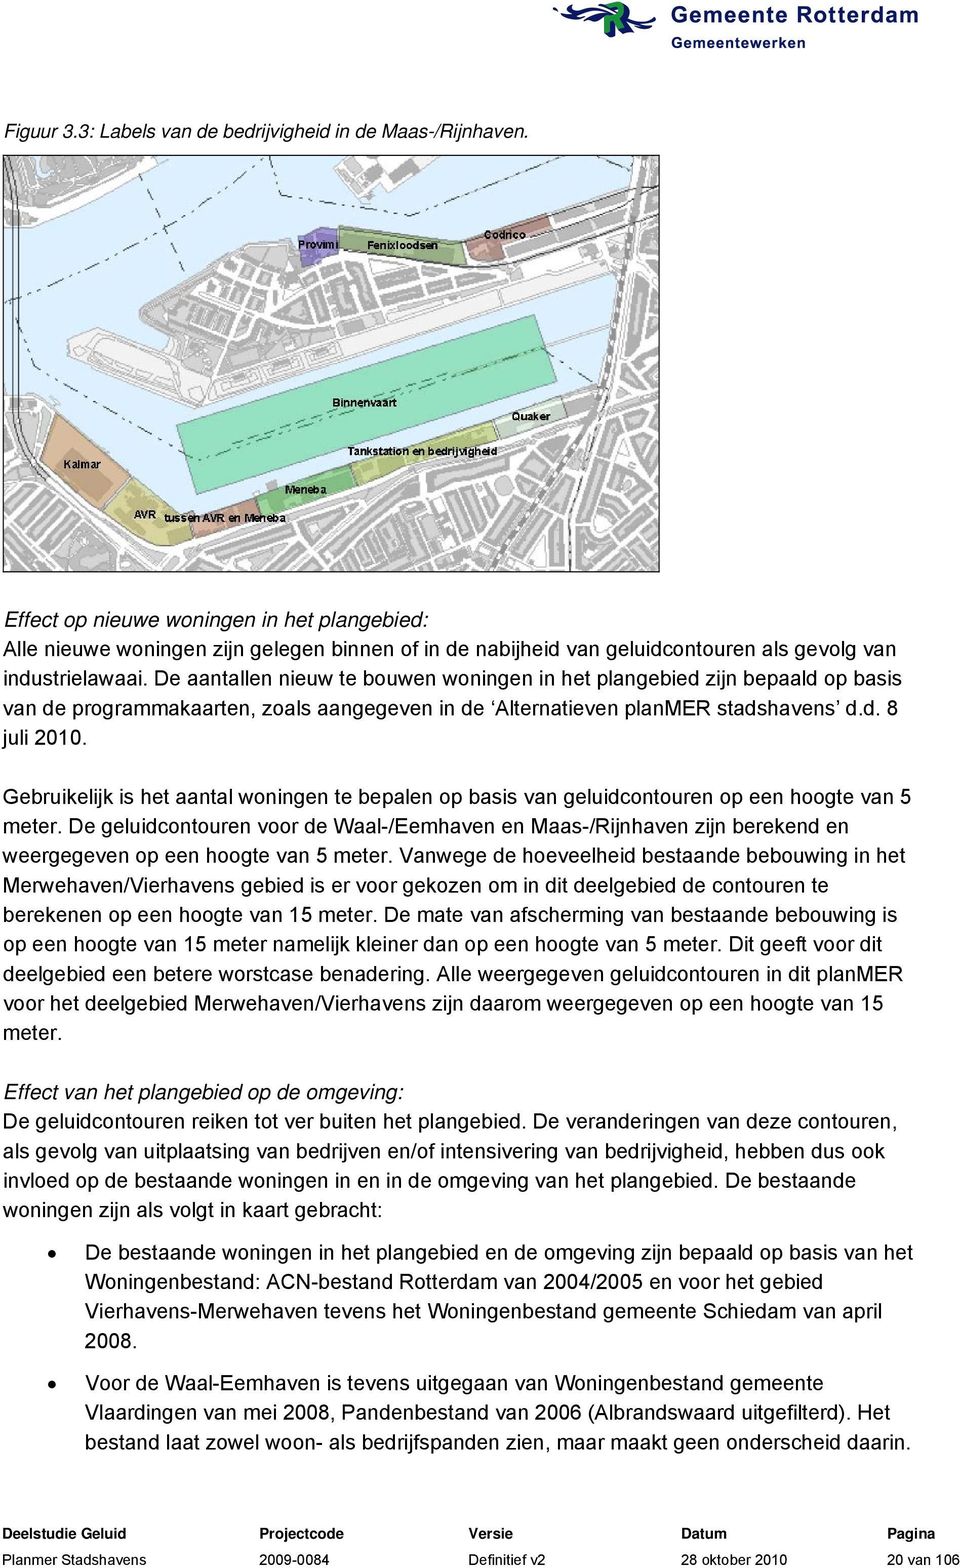 De aantallen nieuw te bouwen woningen in het plangebied zijn bepaald op basis van de programmakaarten, zoals aangegeven in de Alternatieven planmer stadshavens d.d. 8 juli 2010.